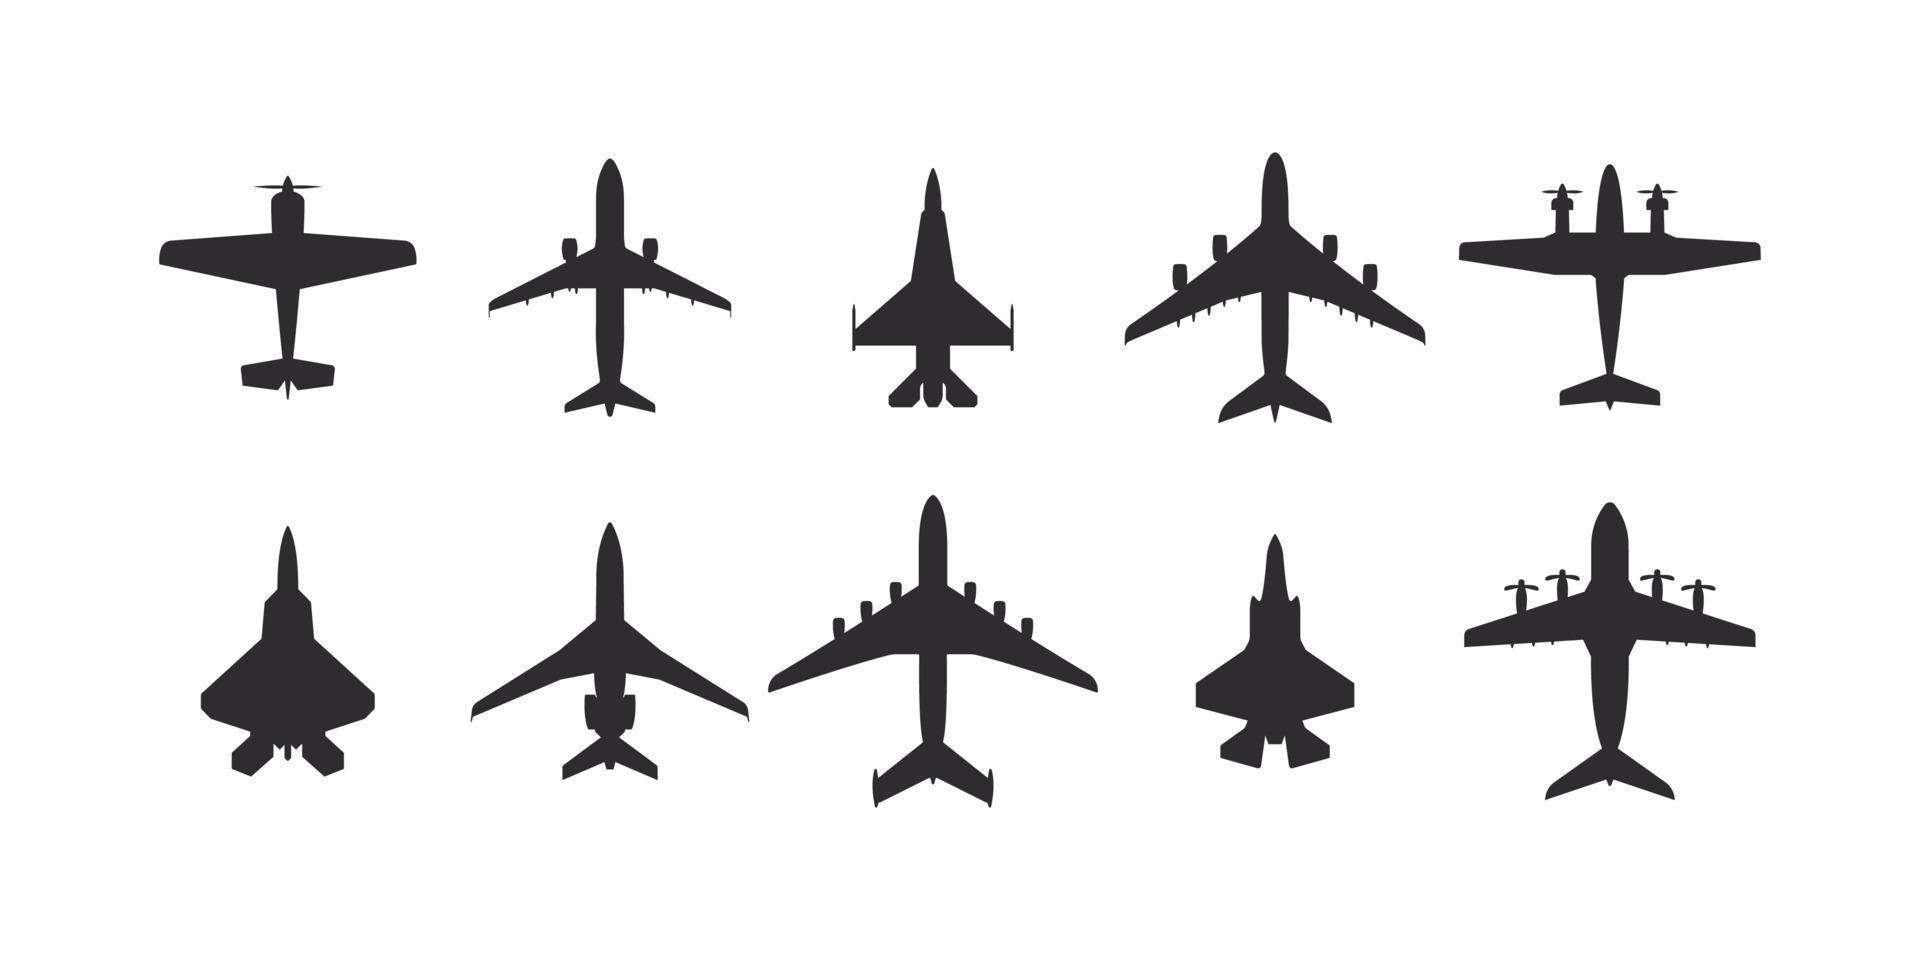 jeu d'icônes d'avion. style plat d'icônes d'avions. silhouettes d'avions vue de dessus. icônes vectorielles vecteur